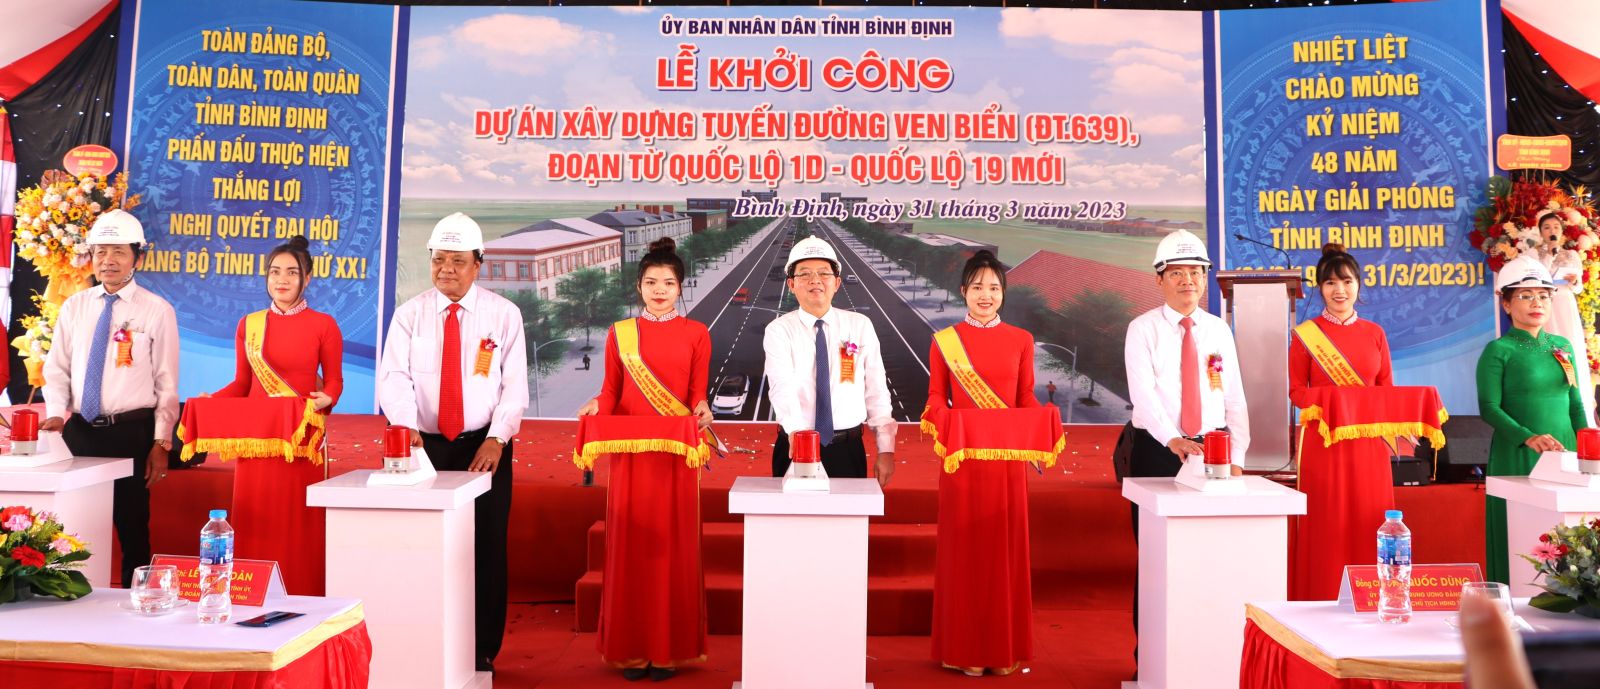 Bình Định đã khởi công Dự án xây dựng tuyến đường ven biển (ĐT.639) đoạn từ QL 1D đến QL 19.